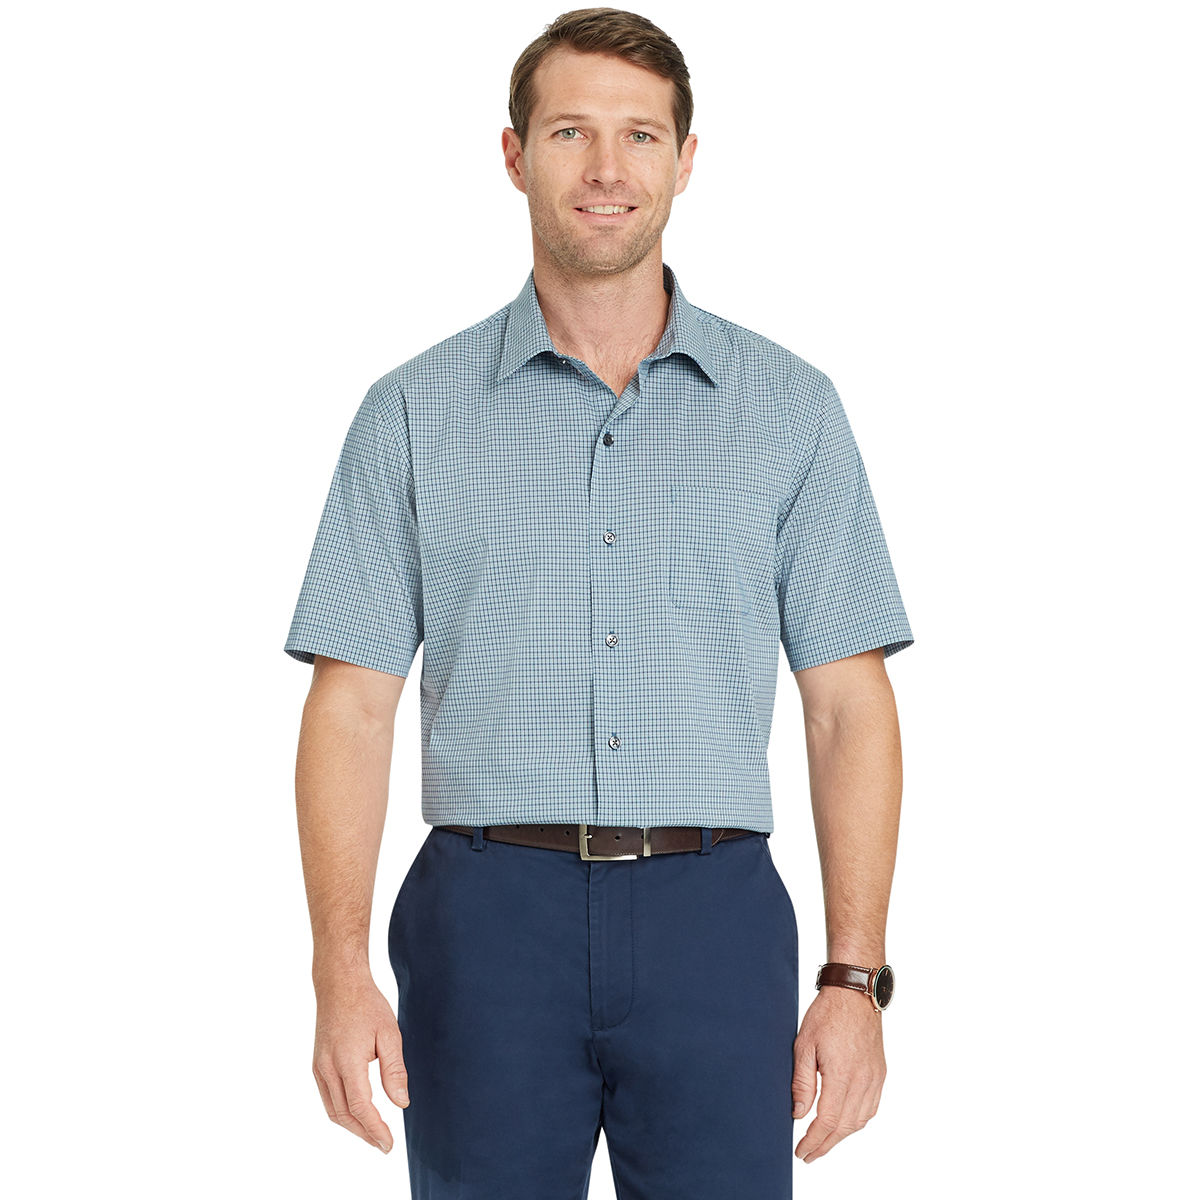 Van Heusen Men's Flex Small Check Short-Sleeve Shirt - Green, M